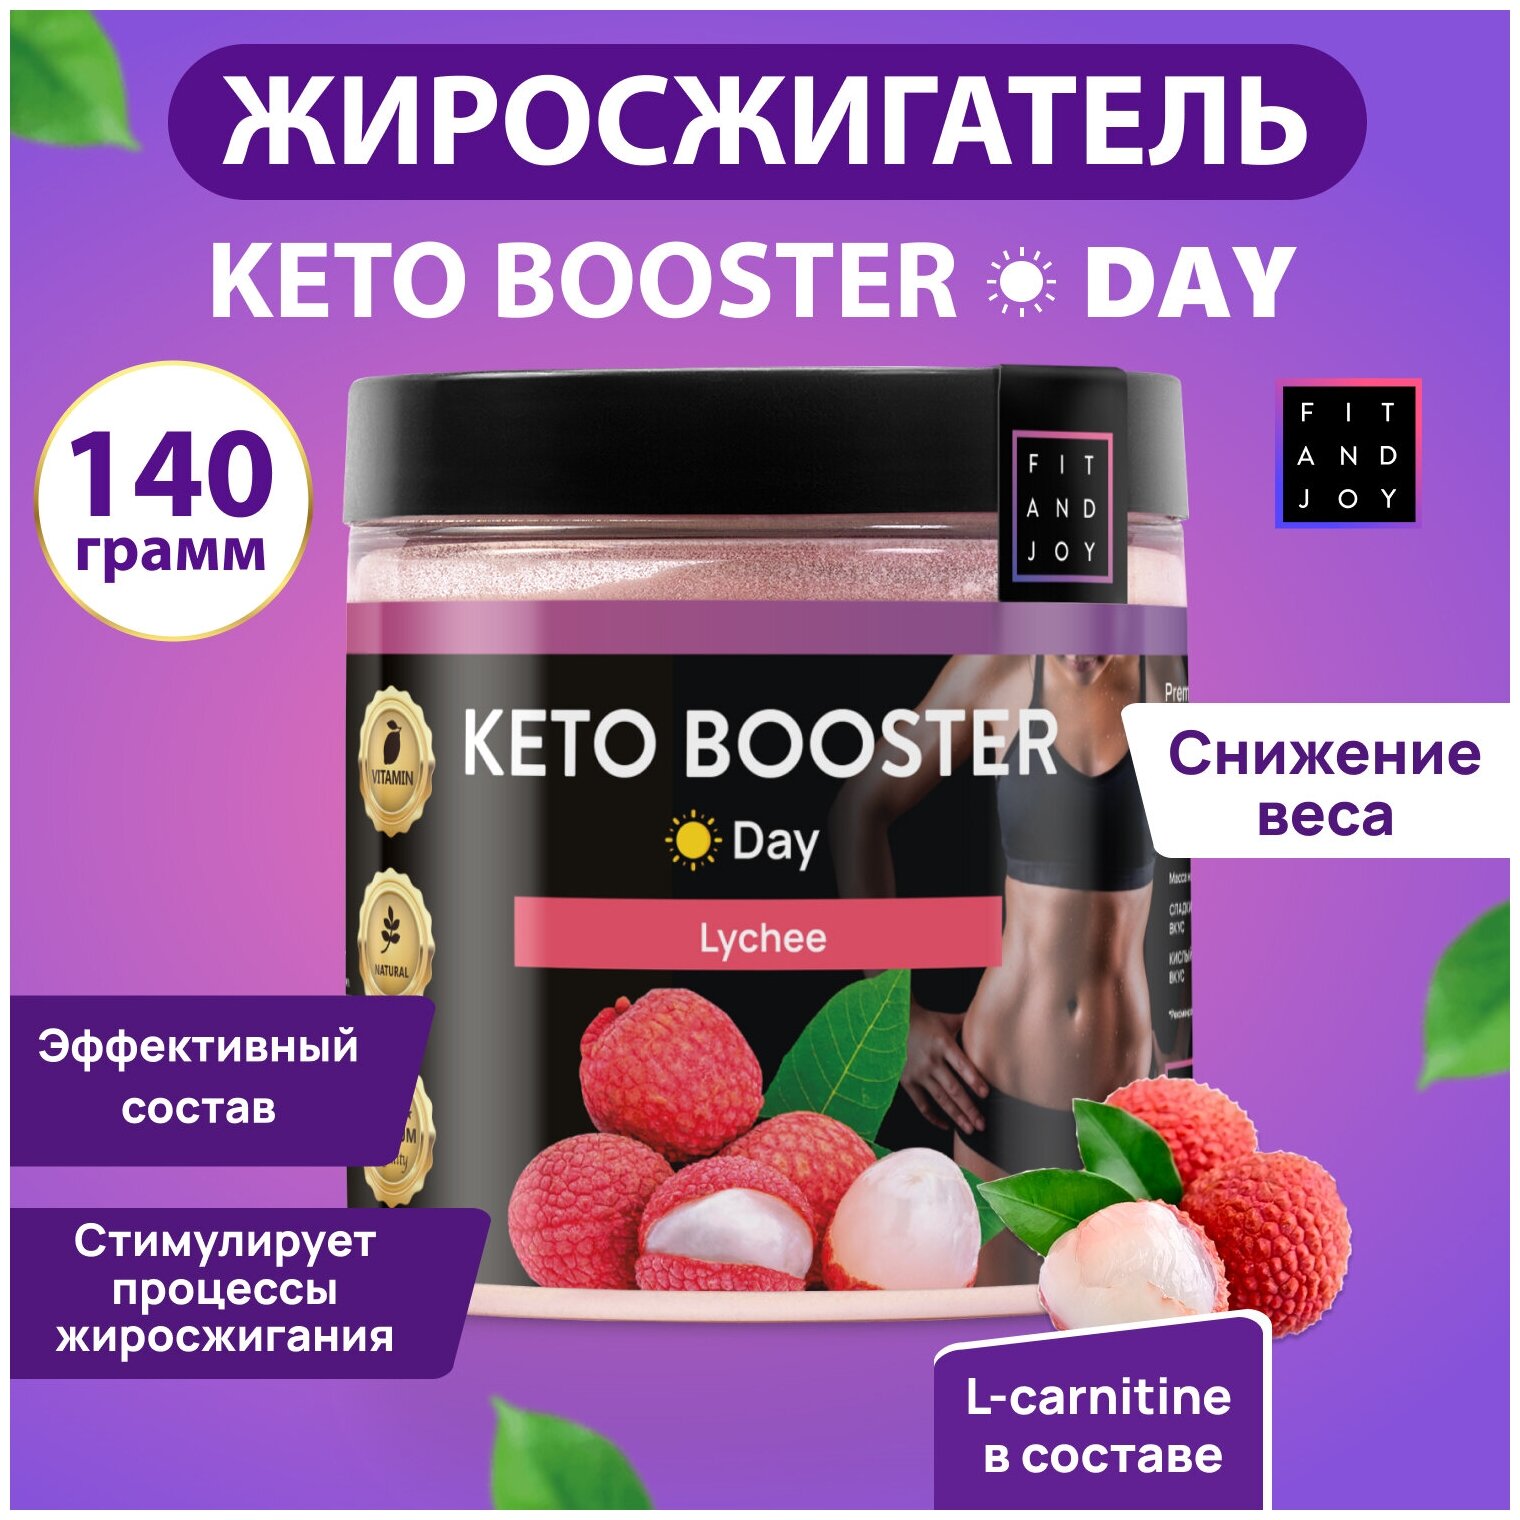 Keto-booster Дневной, l-карнитин, Похудение, Сушка, Fit and Joy, спортивное питание, жиросжигатель для похудения, l-карнитин для снижения веса